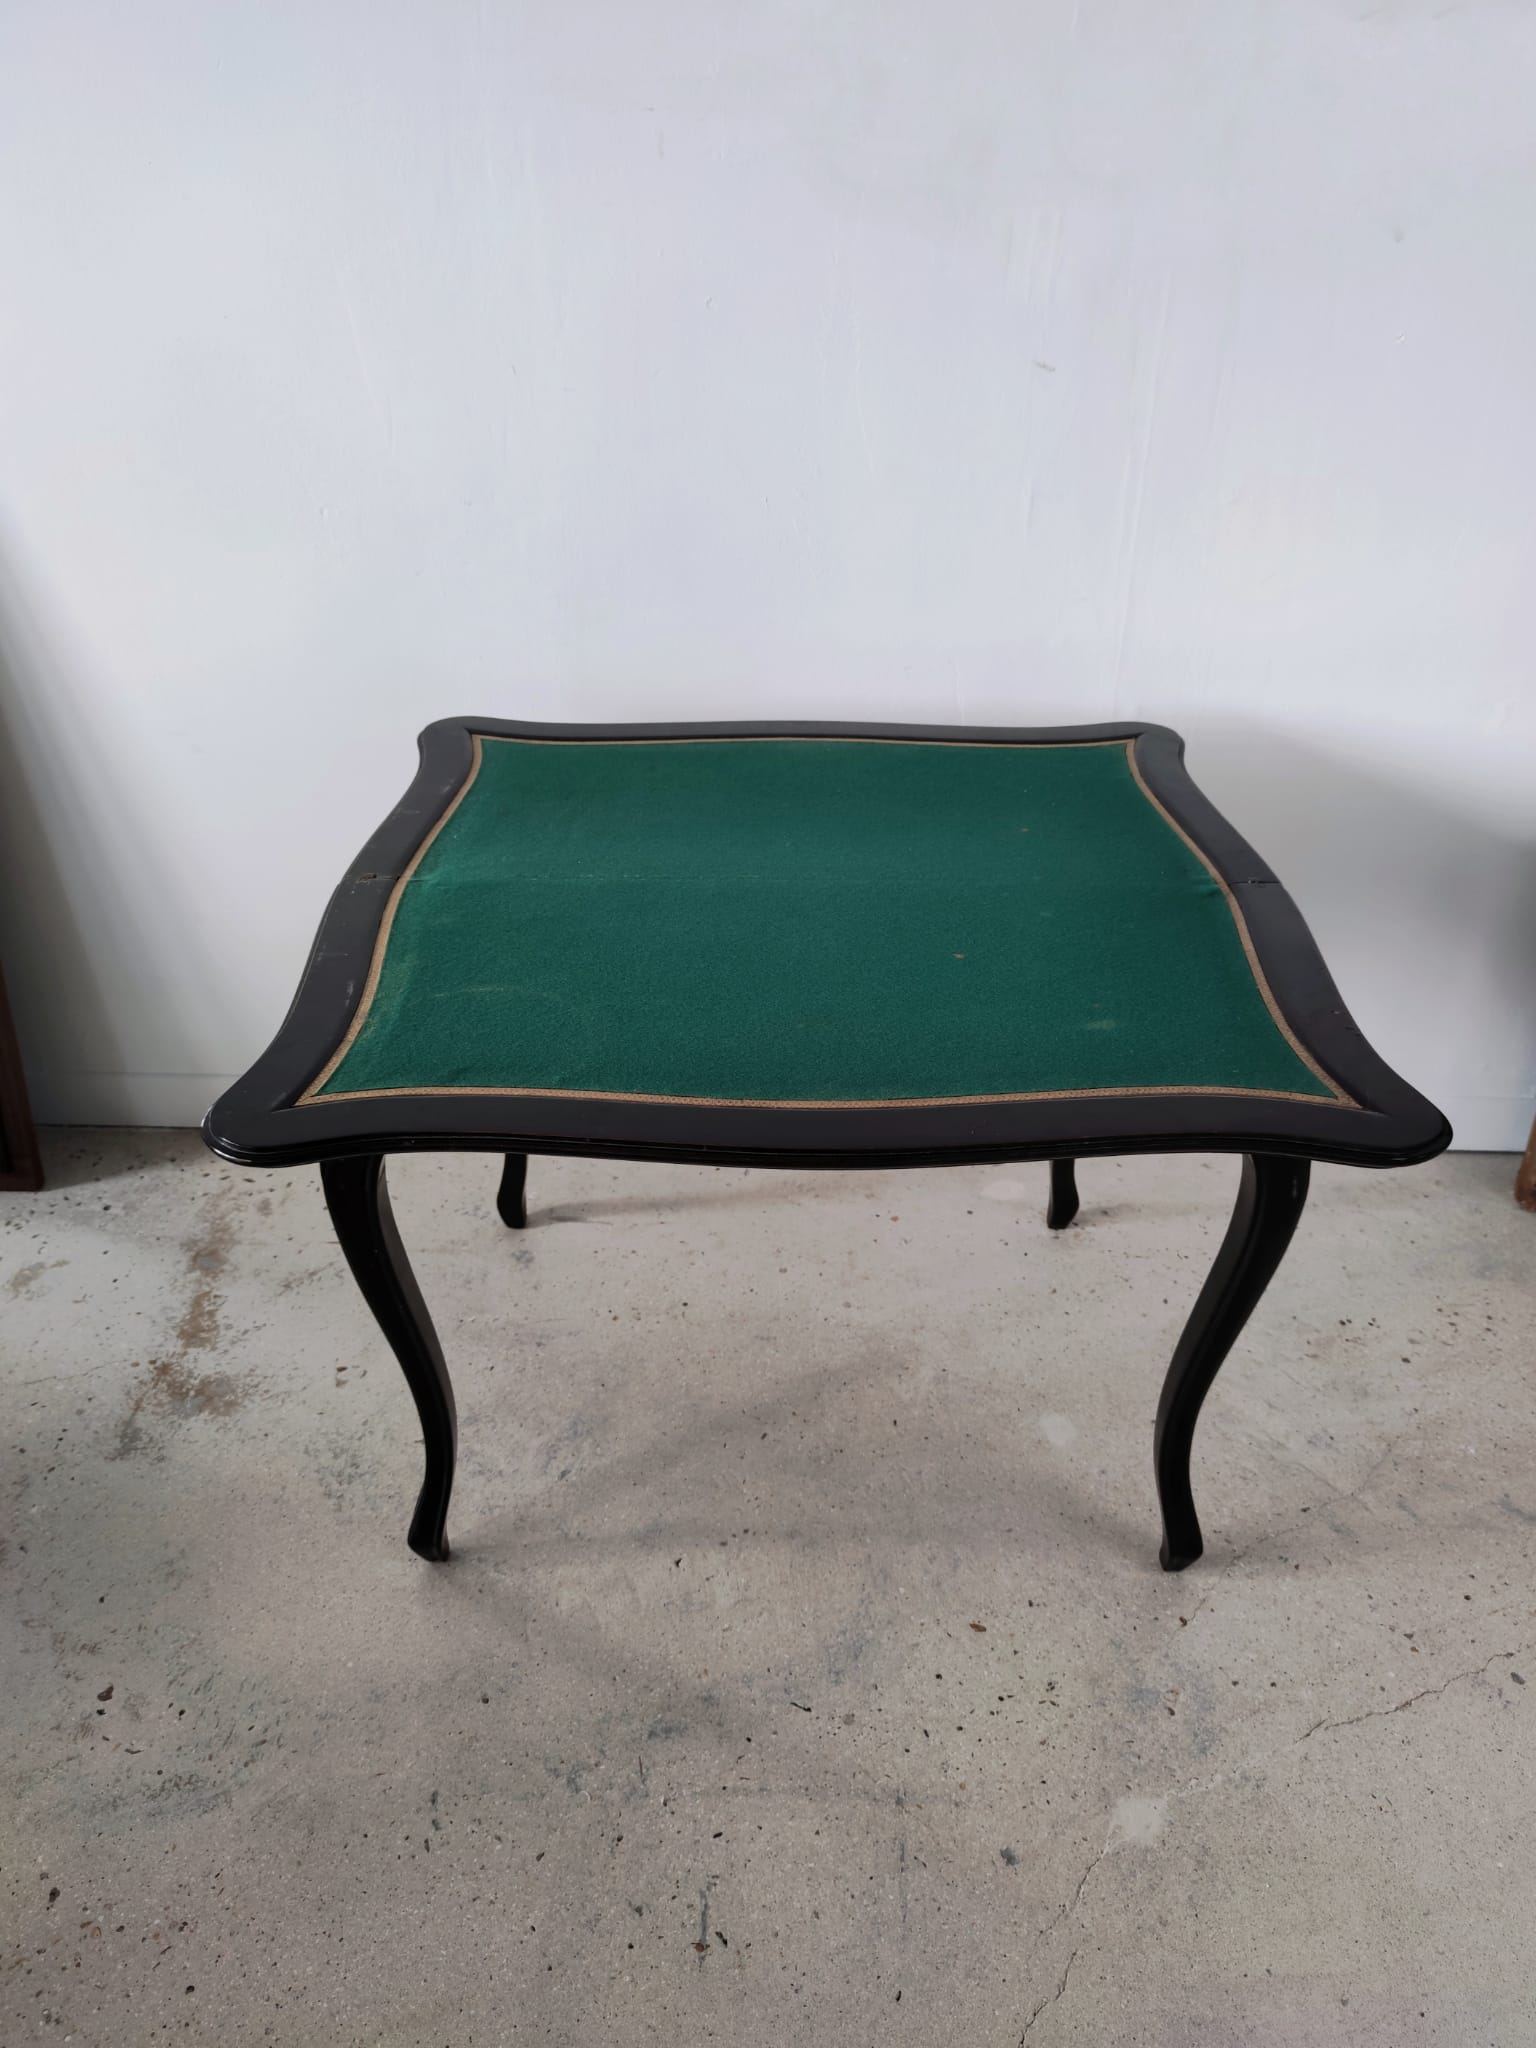 Table à jeux en bois noirci mouluré, pieds cambrés, feutrine verte